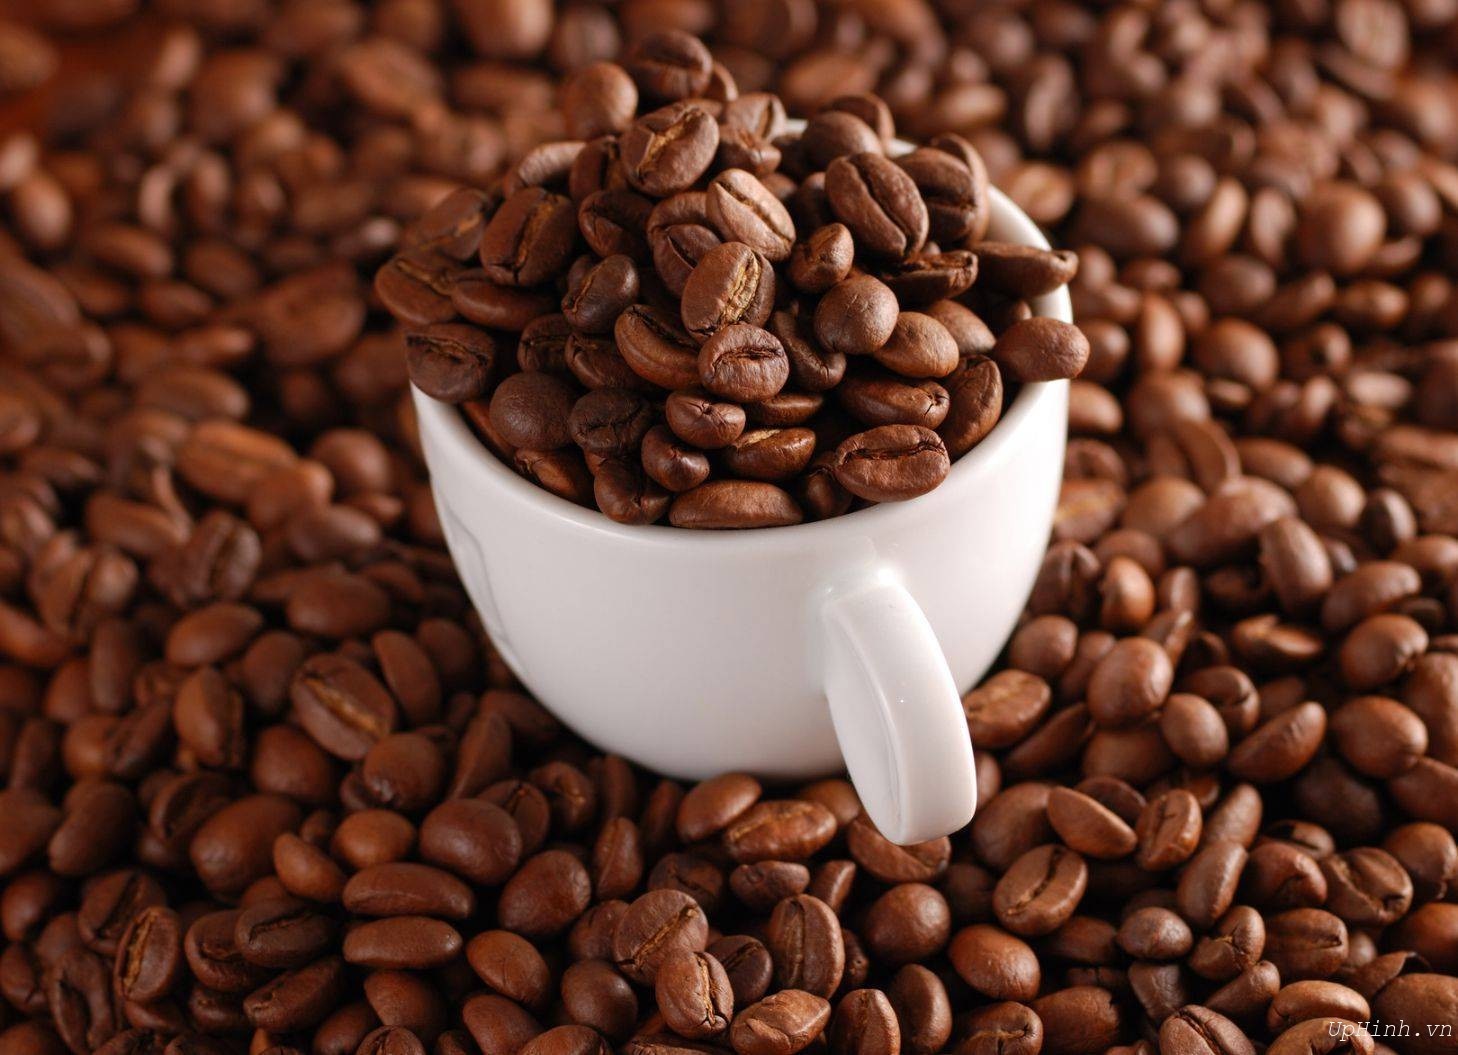 Cà phê moka là gì và hương vị của cà phê moka thế nào